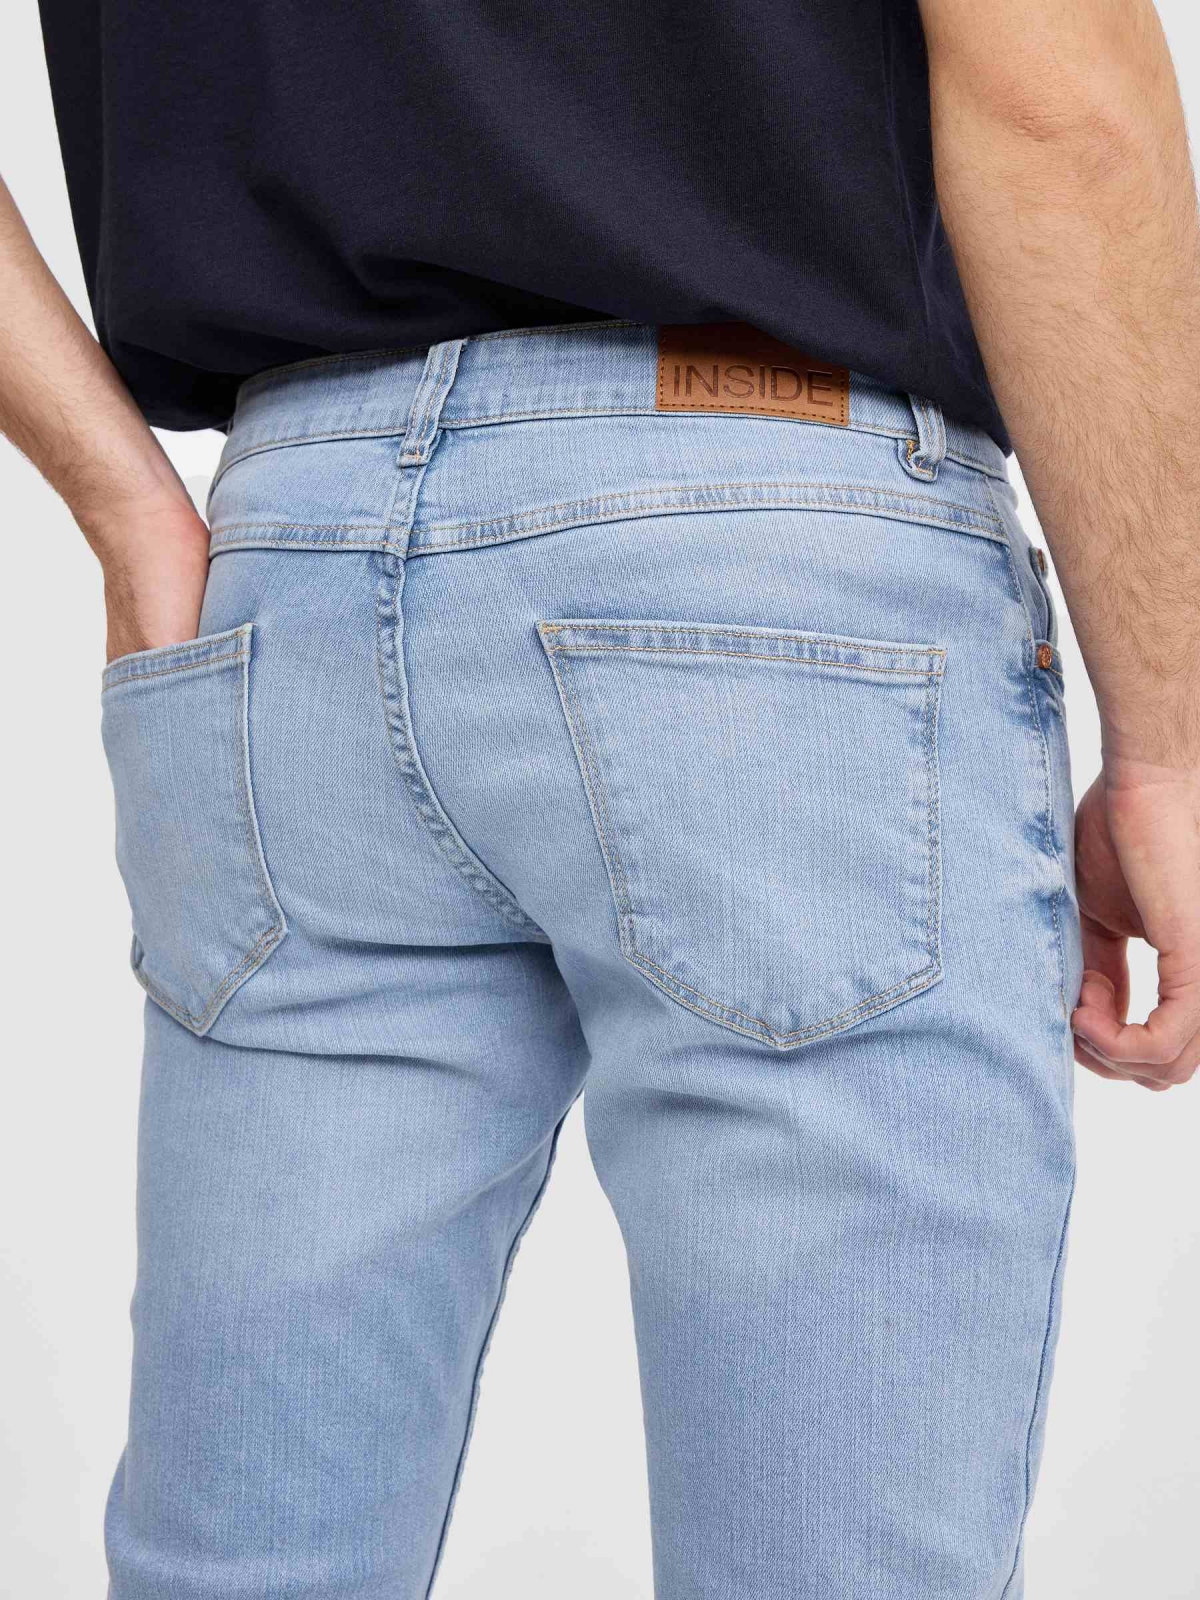 Jeans regular azul claro lavado tenue muslo azul vista detalle